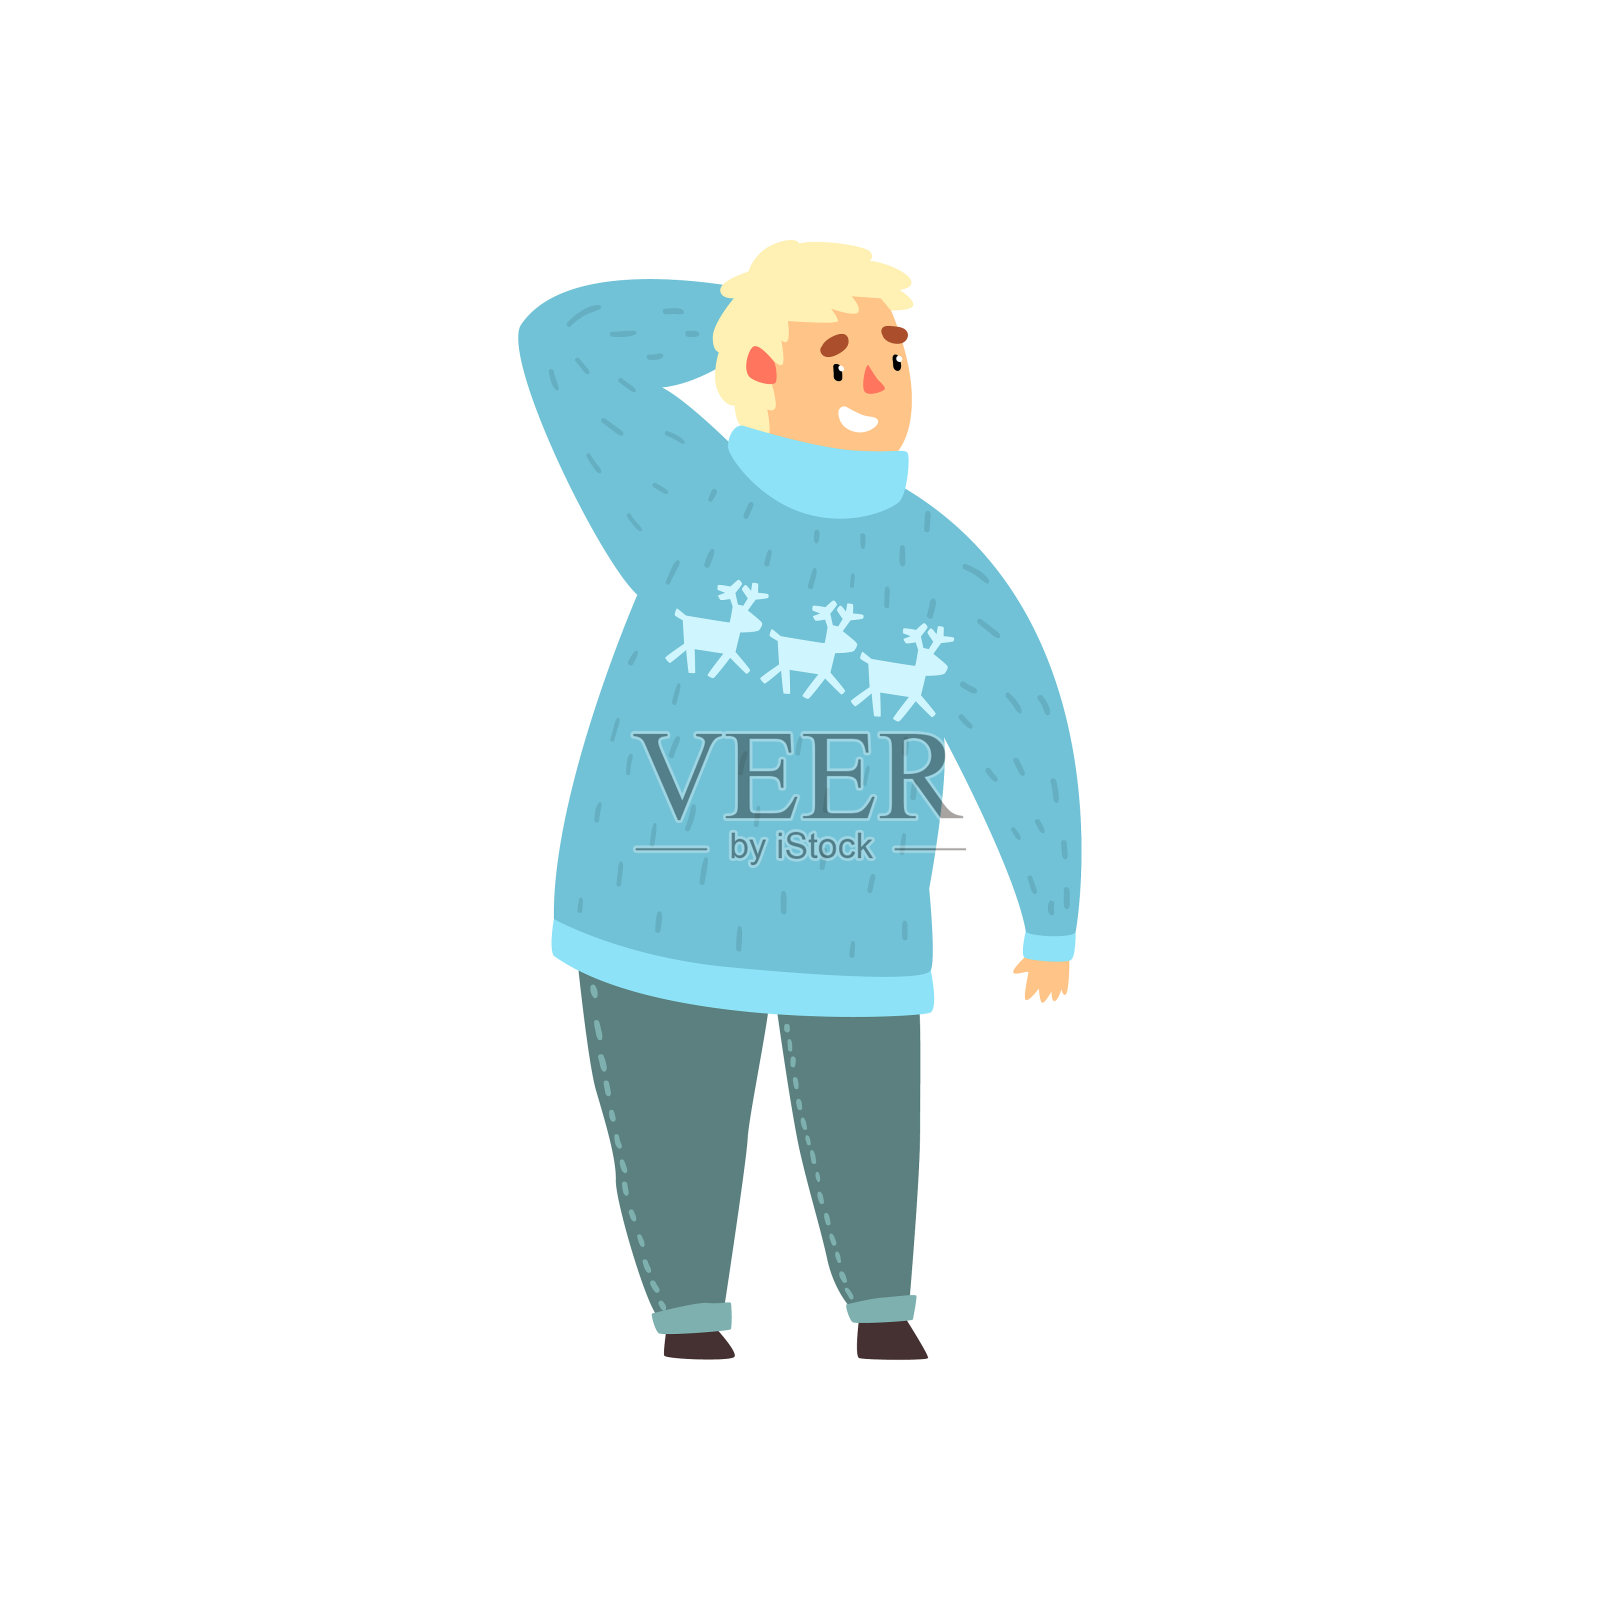 英俊的胖子穿着蓝色毛衣配鹿和牛仔裤，胖子穿着时尚的衣服，身体正矢量插图在白色的背景插画图片素材